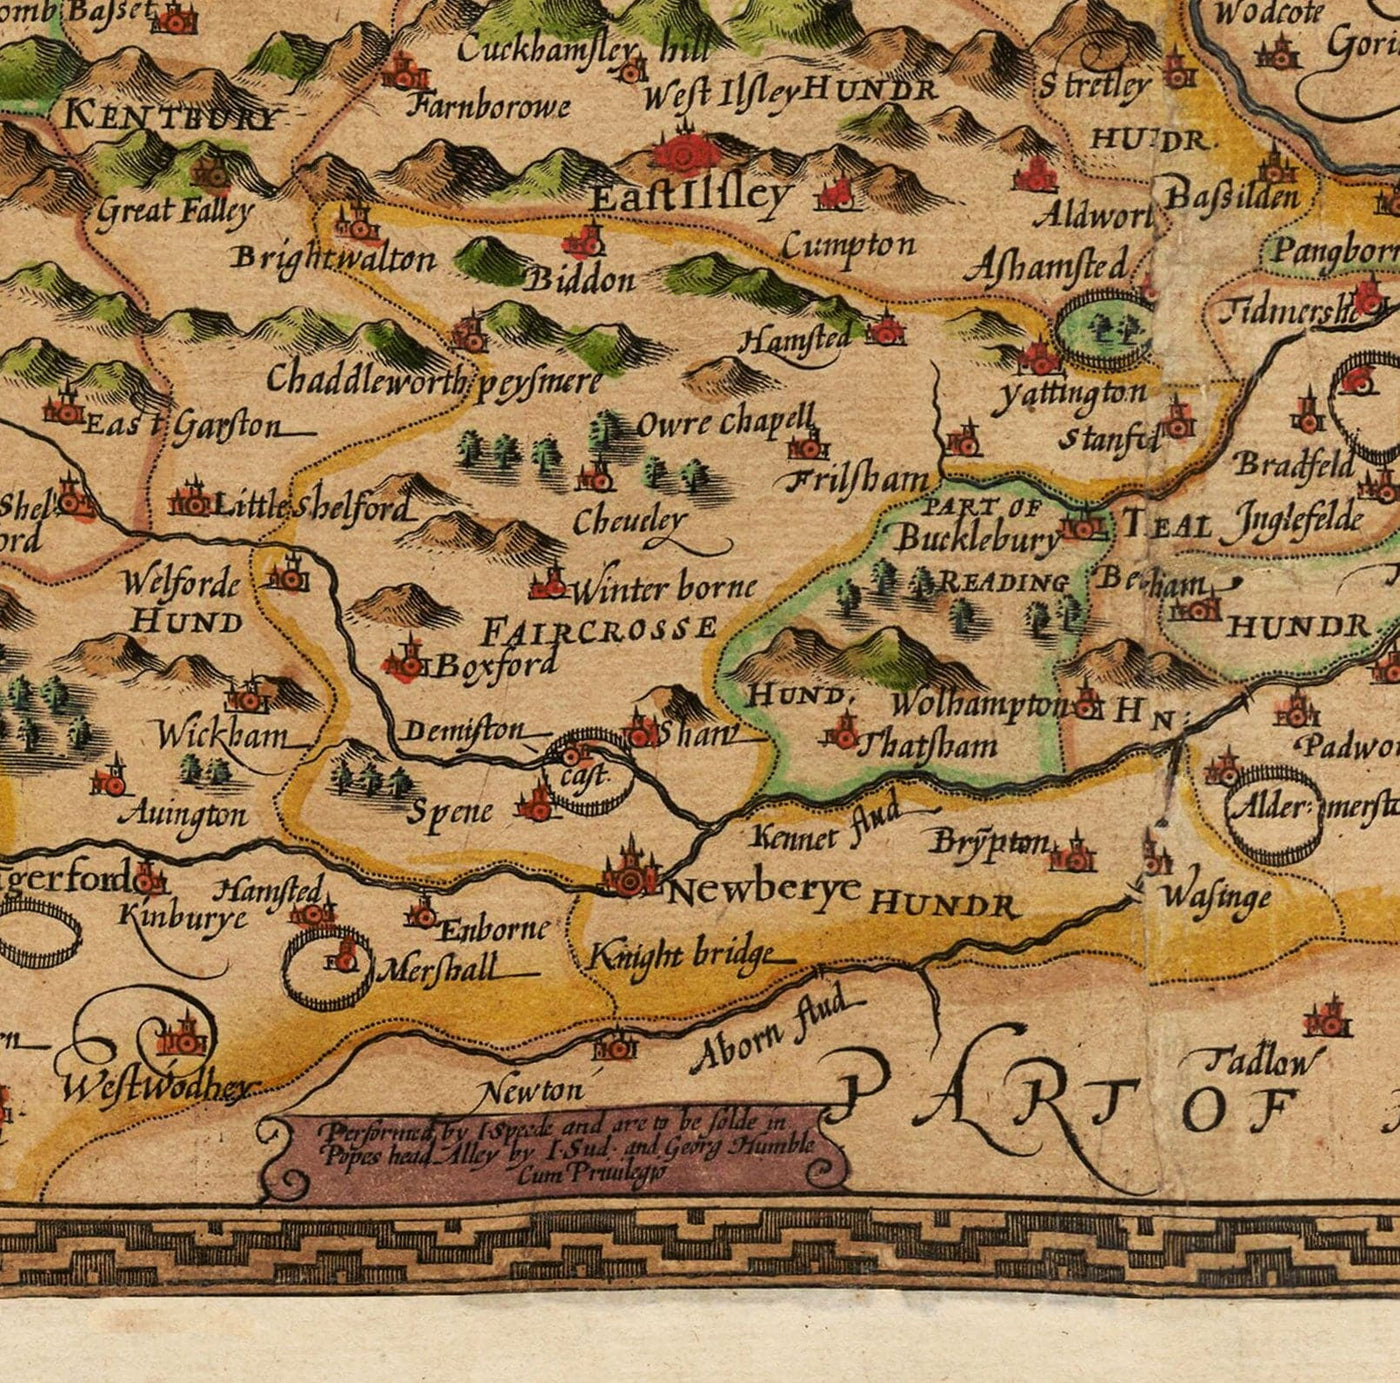 Old Map of Berkshire, 1611, John Speed - Reading, Slough, Bracknell, Maidenhead